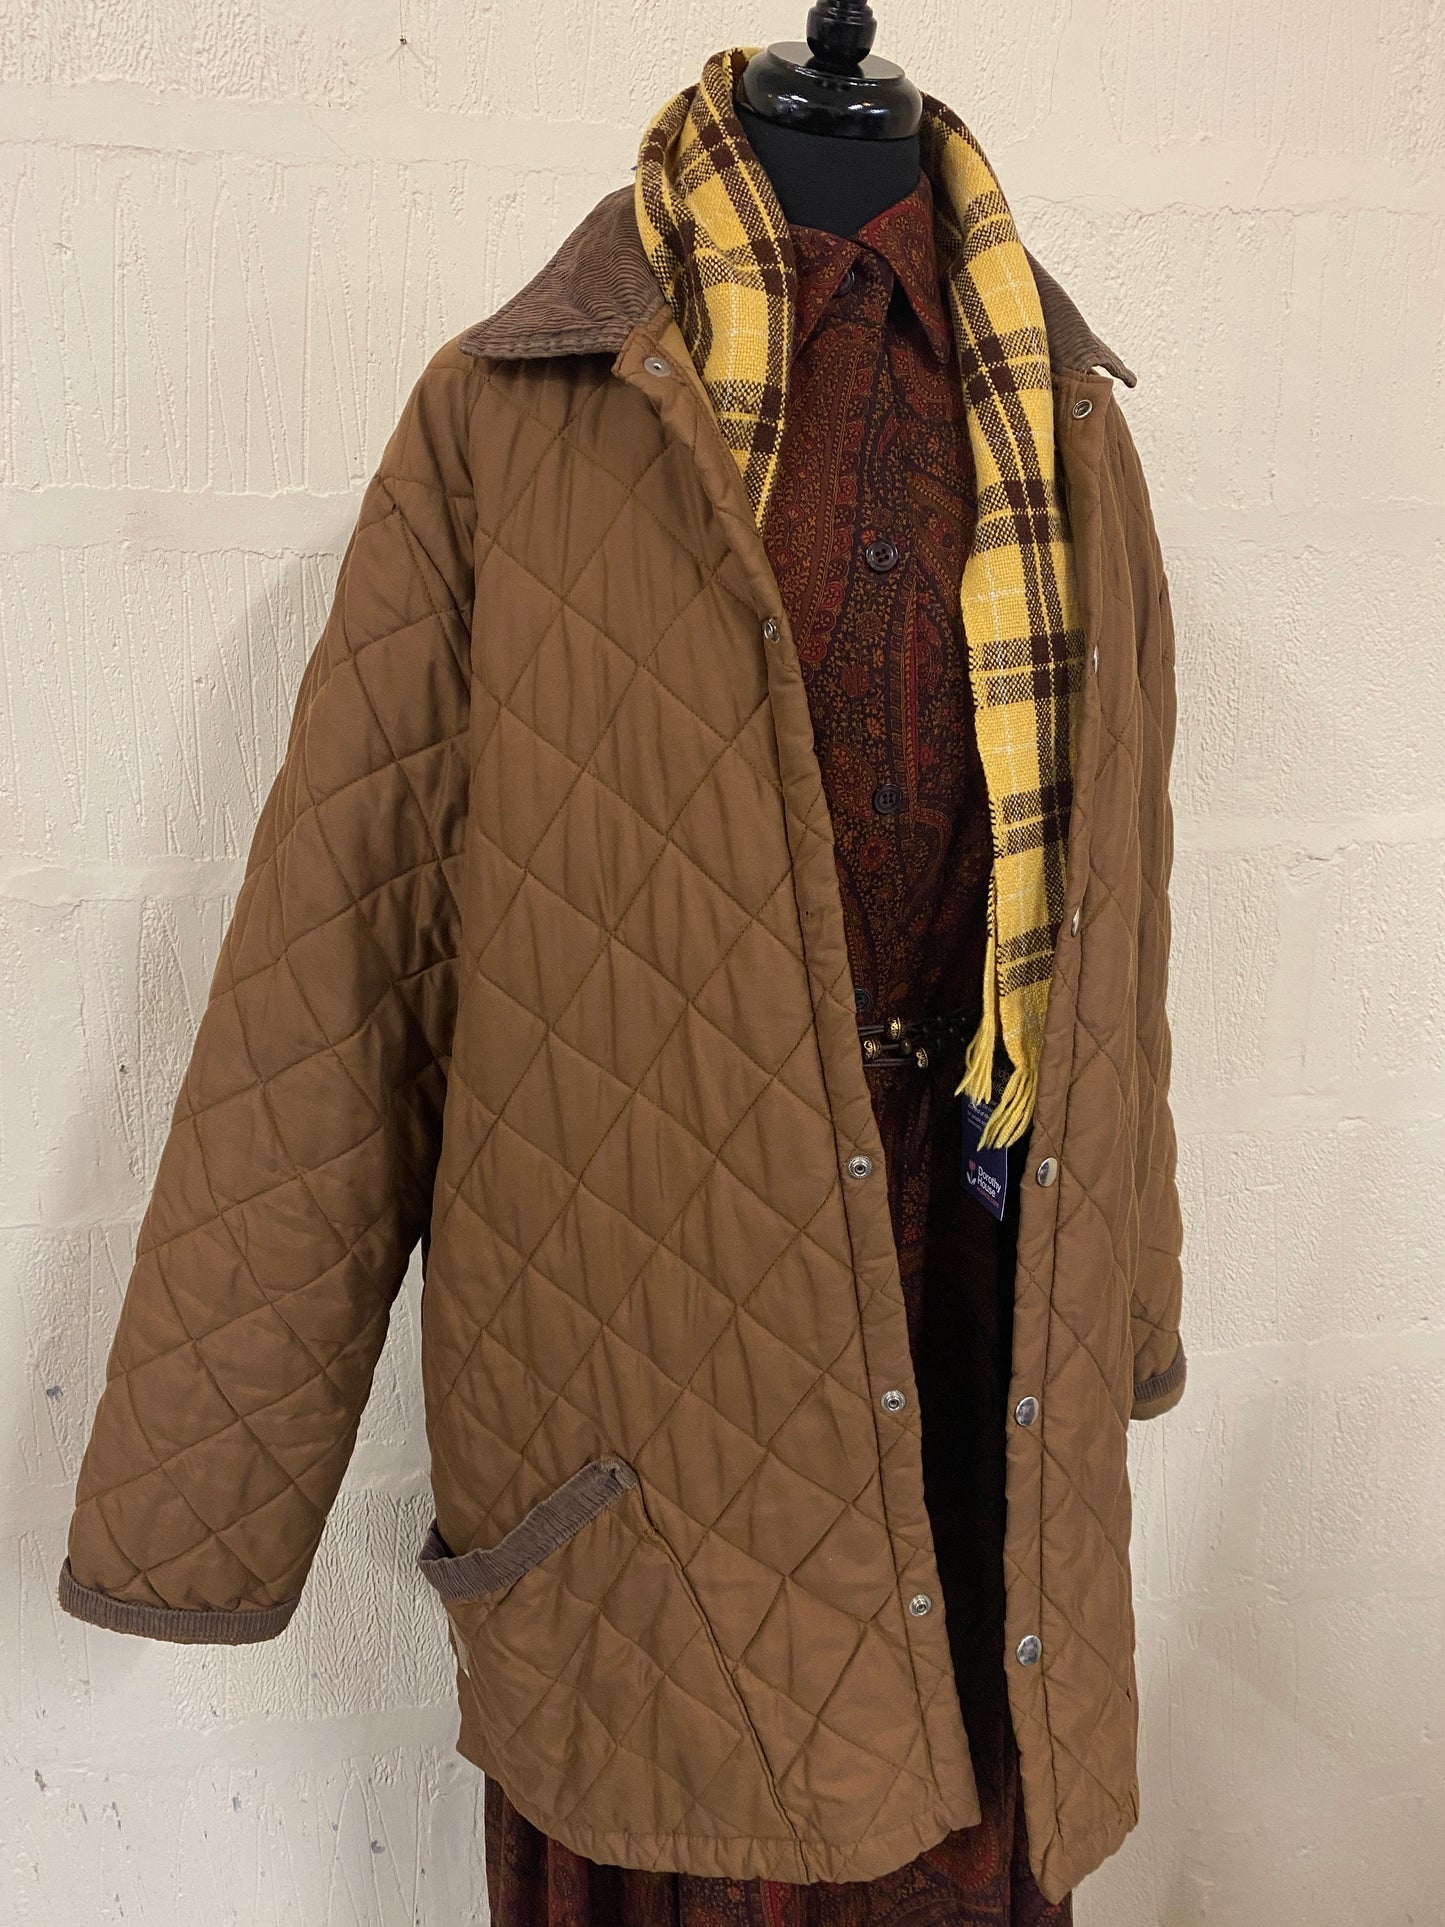 Vintage Caramel Quilted Lightweight Jacket Coat Size 18